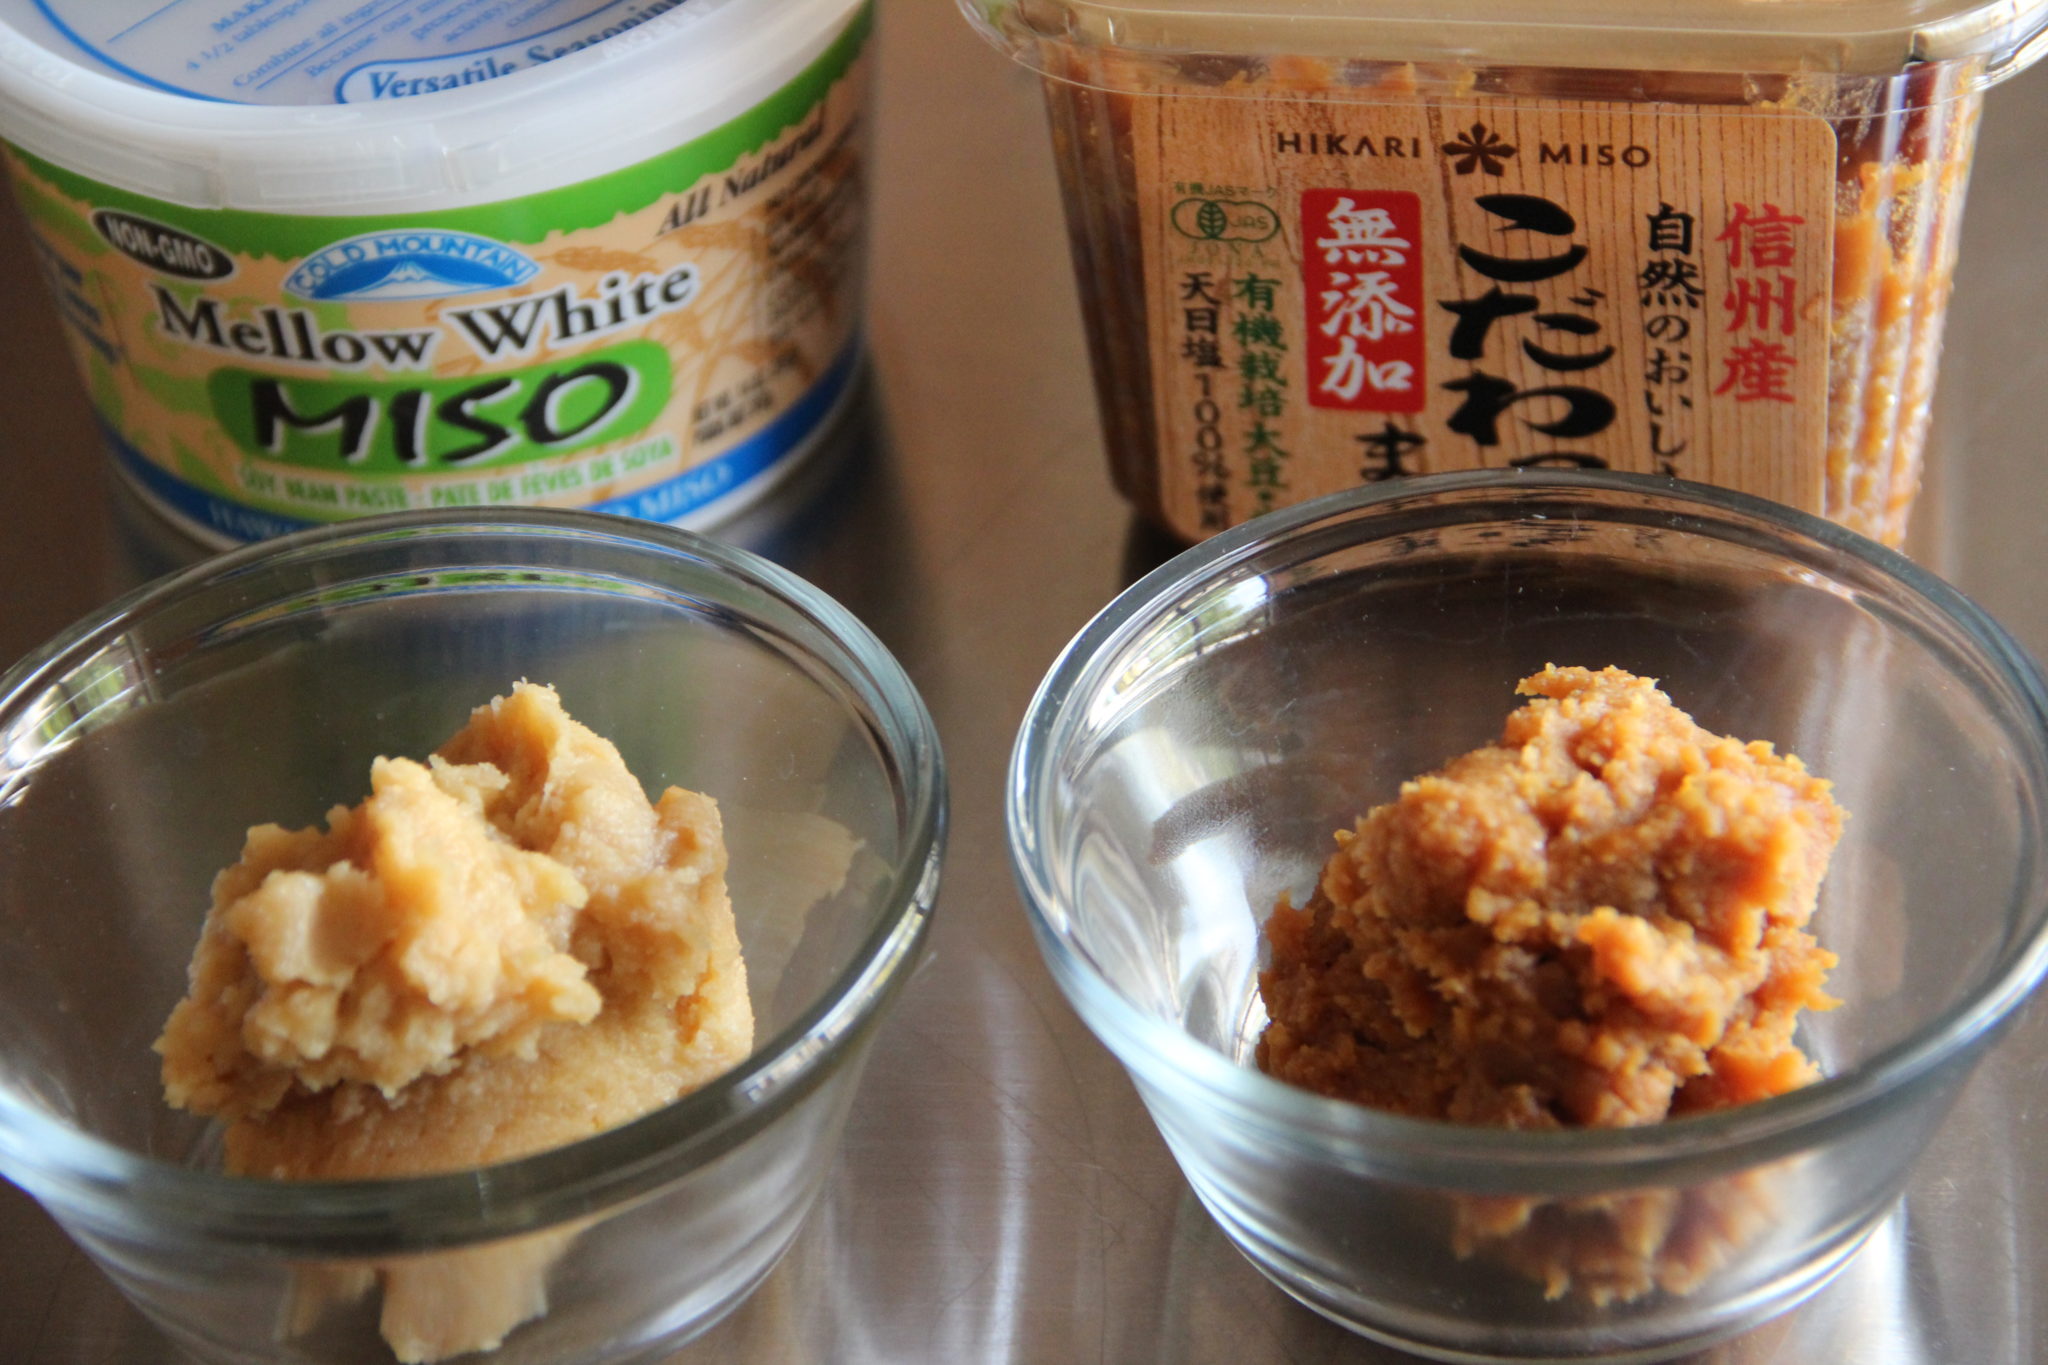 recipes using white miso paste